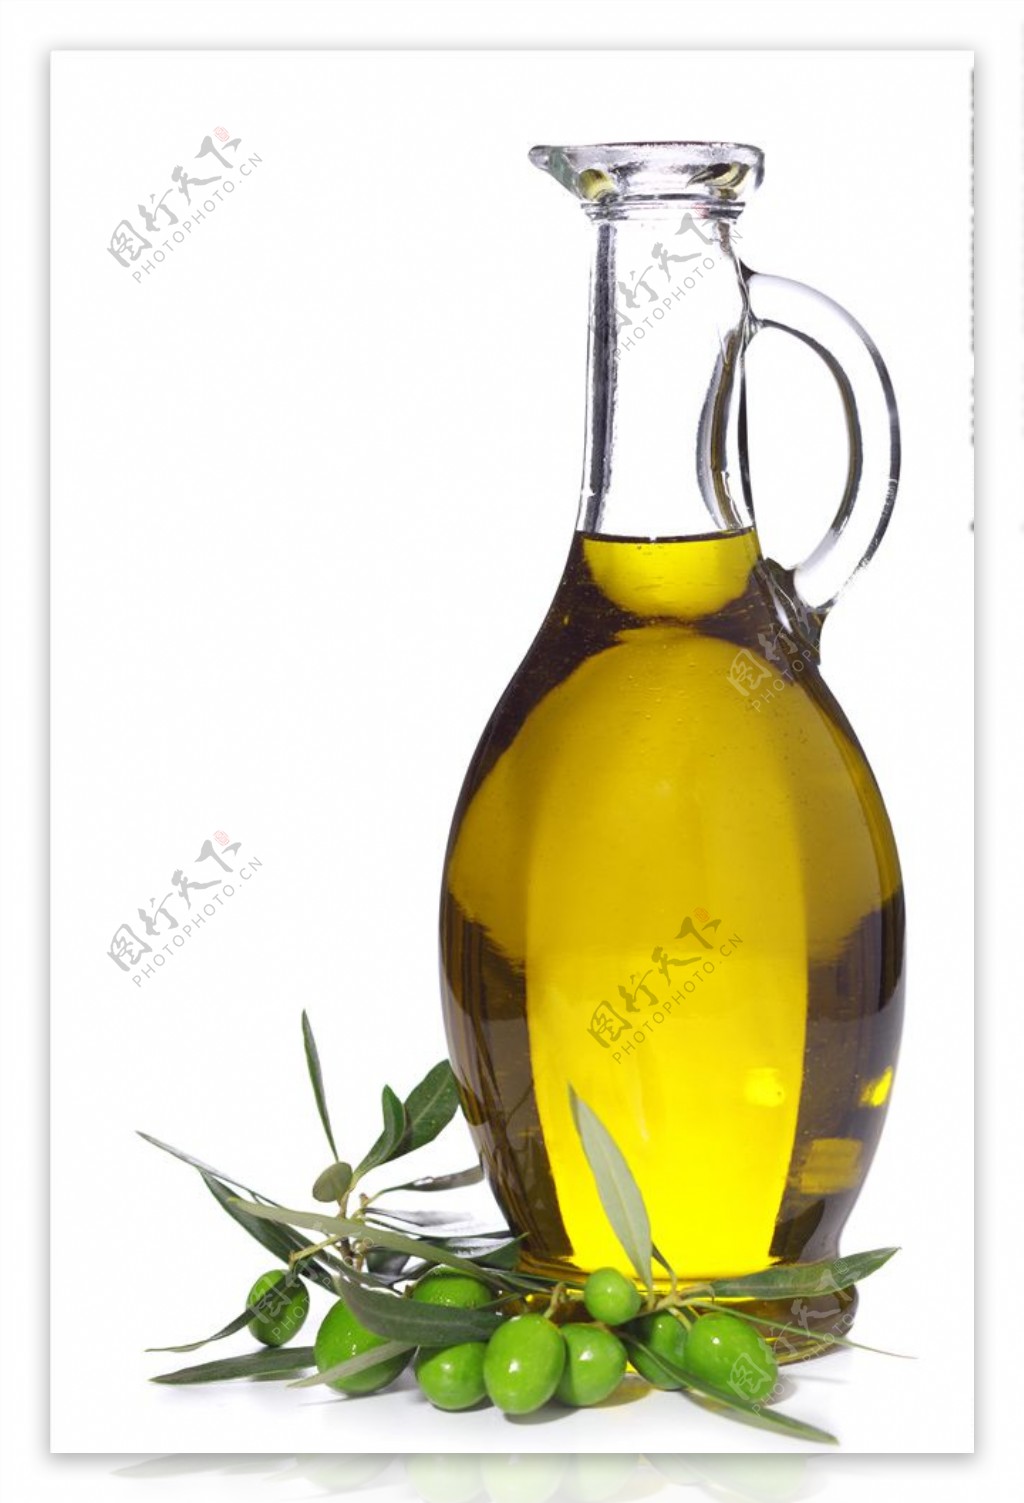 清澈的橄榄油和橄榄